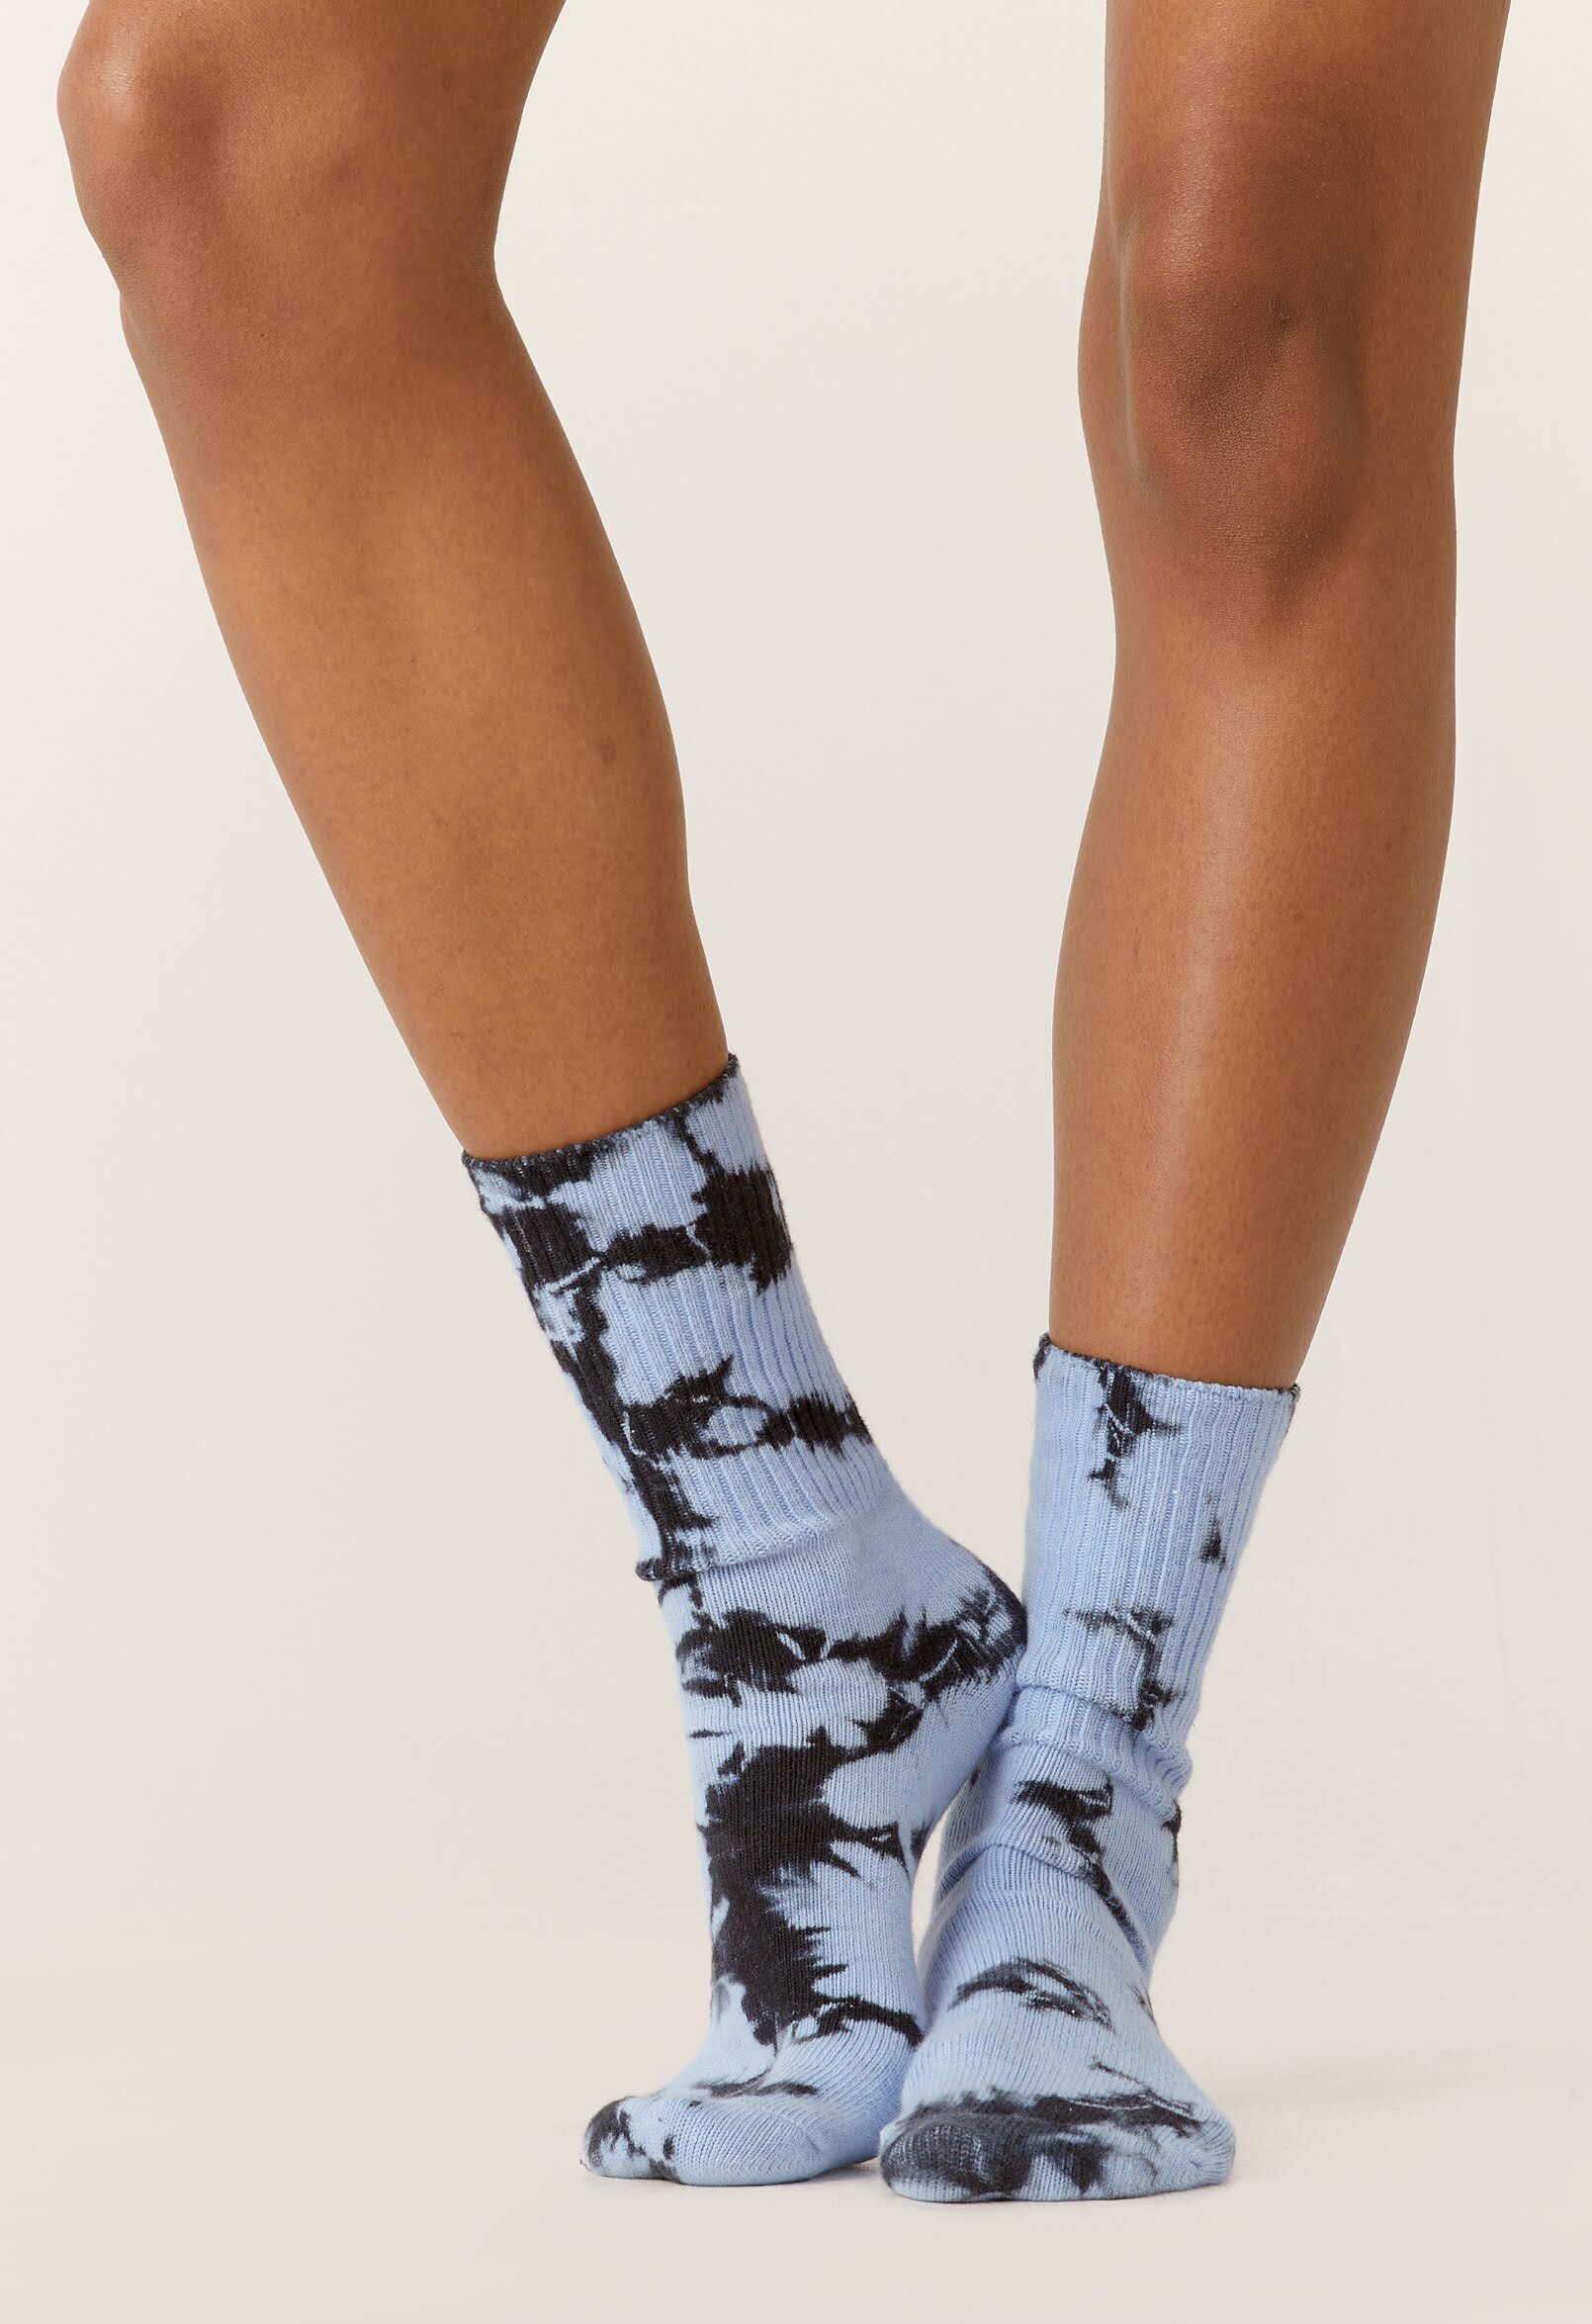 Los Angeles print tie dye socks